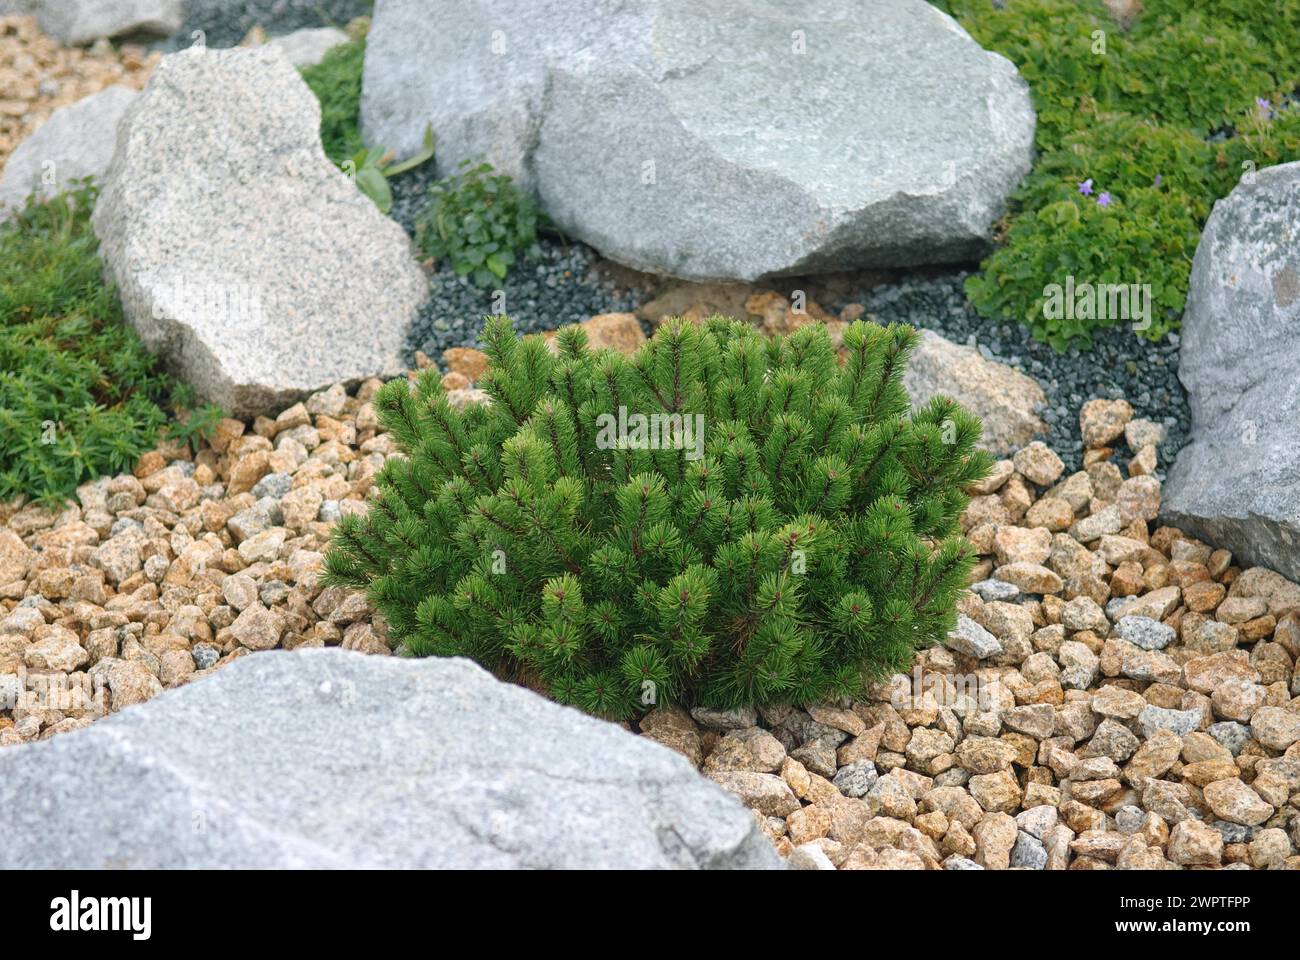 Pino enano (Pinus mugo pumilio), parque de rocas, Nochten, 81 Foto de stock